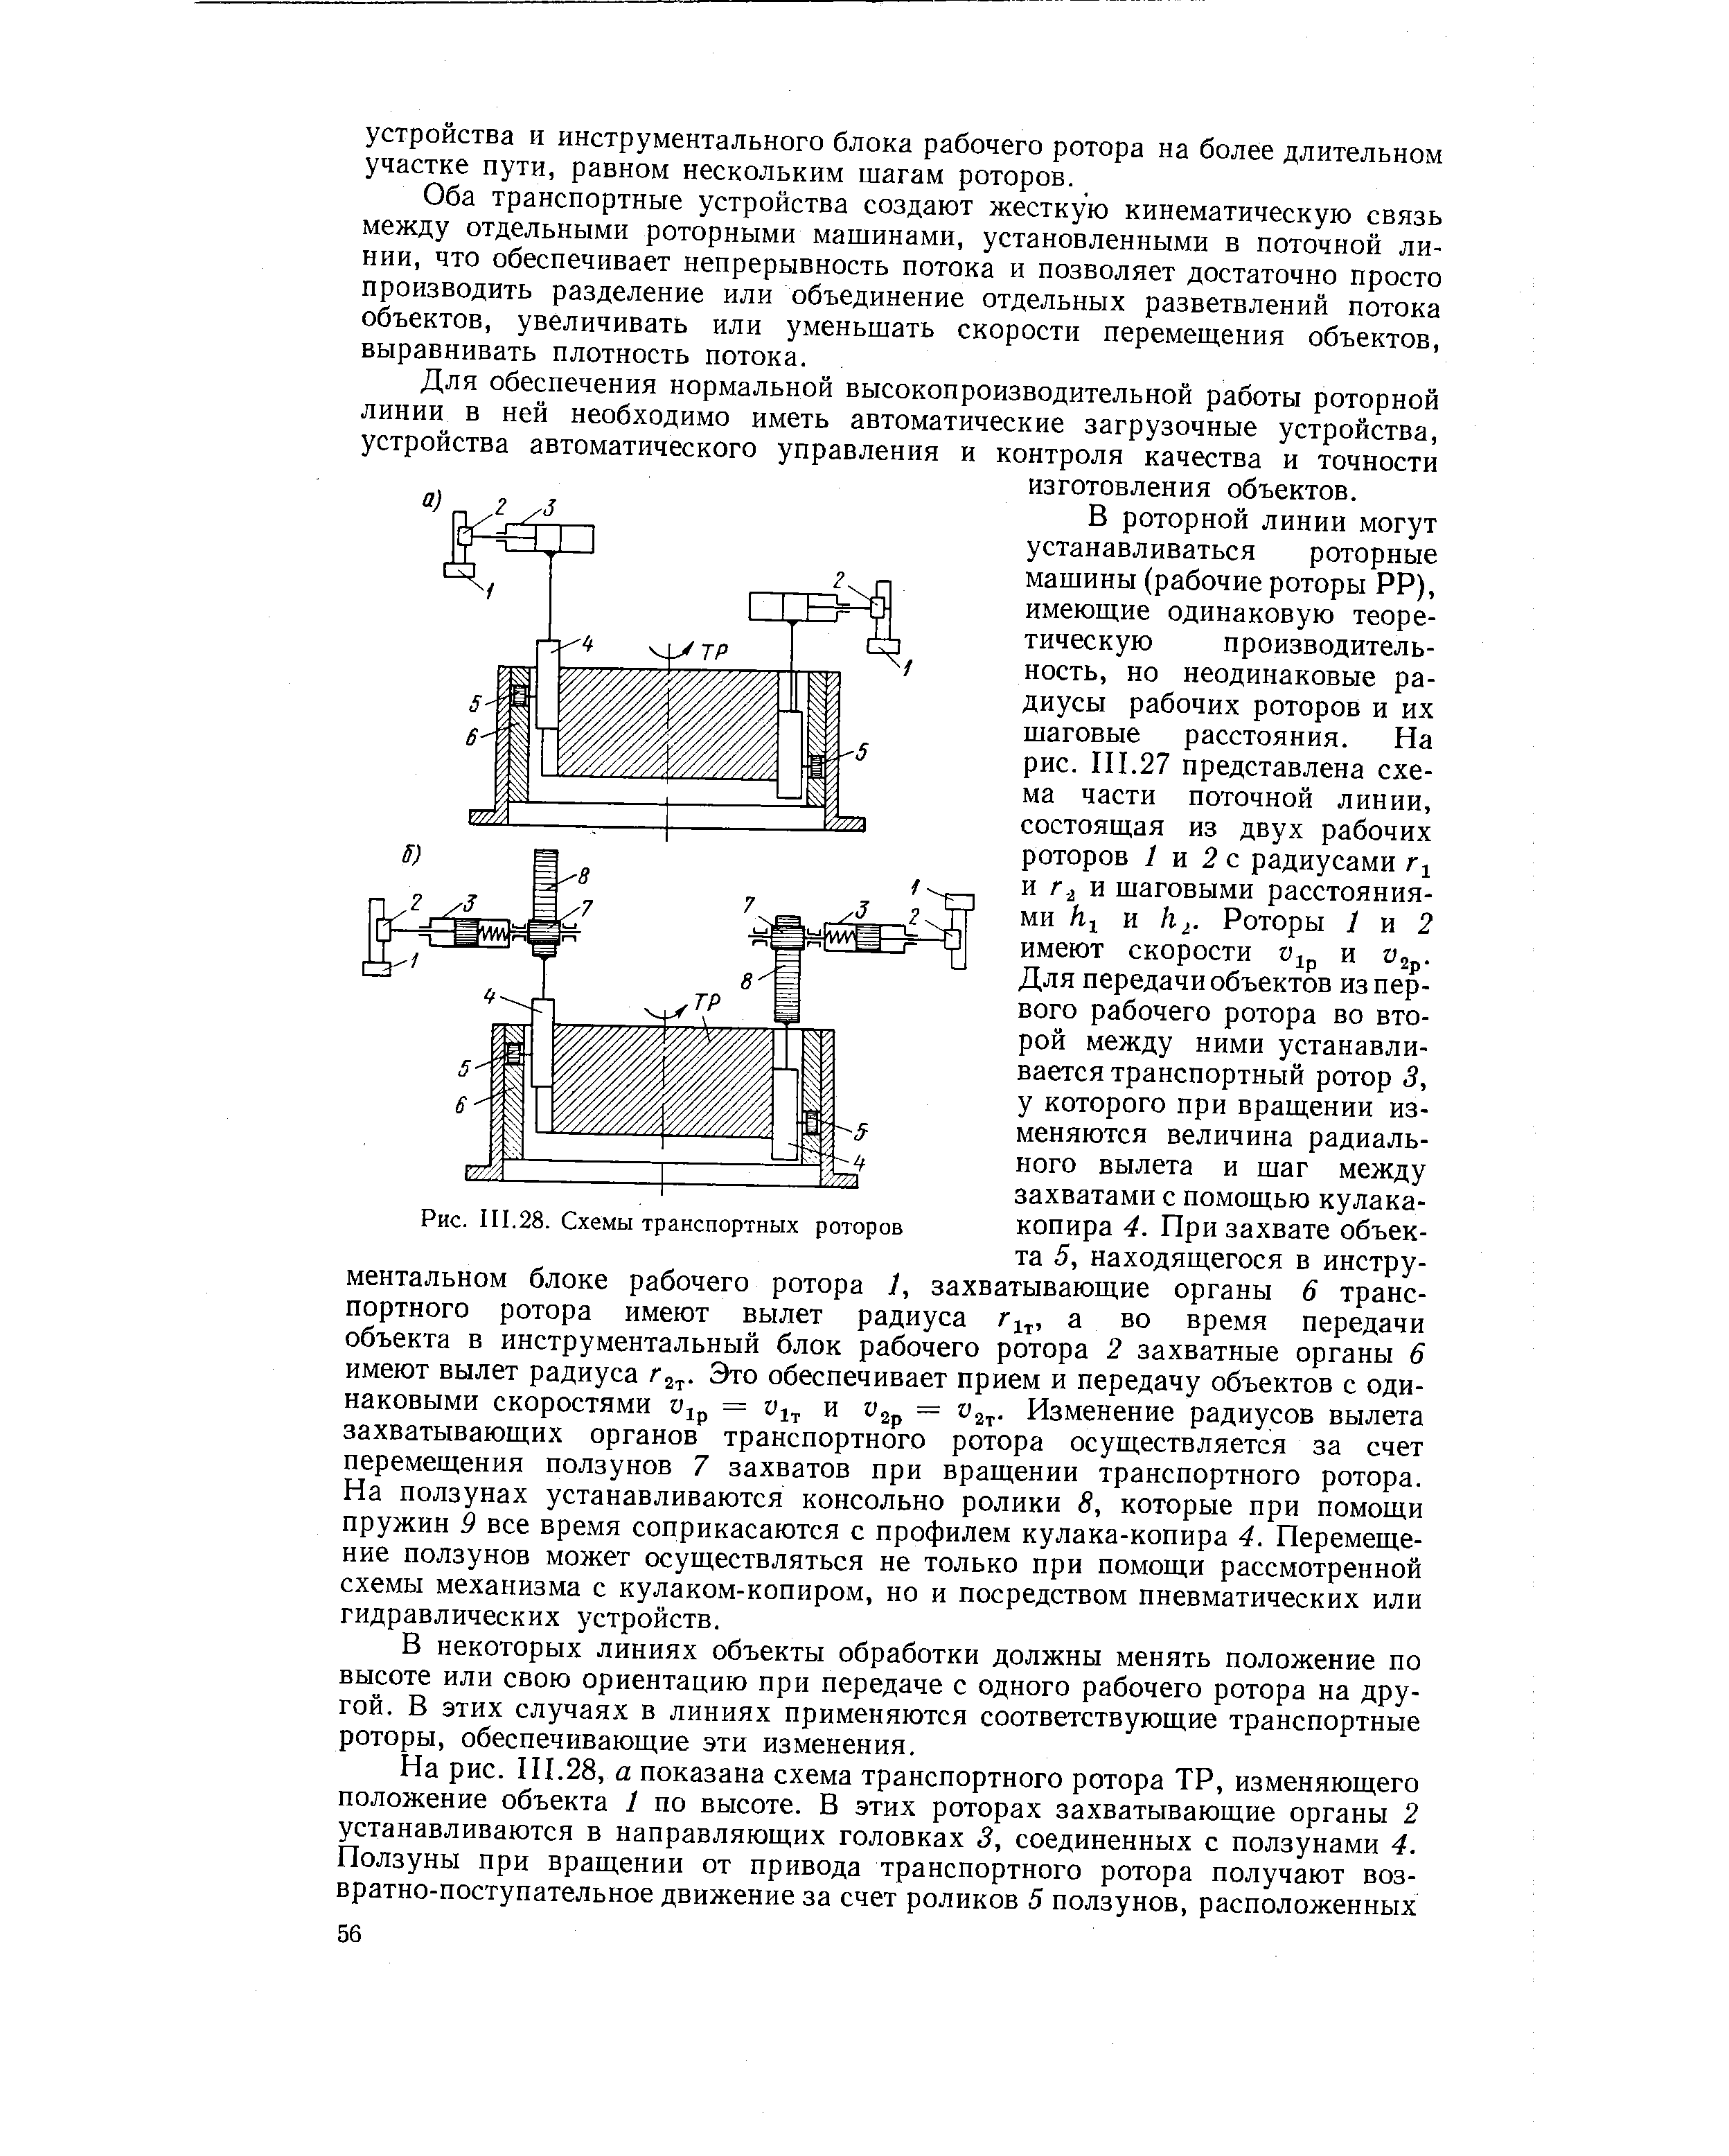 Рис. III.28. Схемы транспортных роторов
